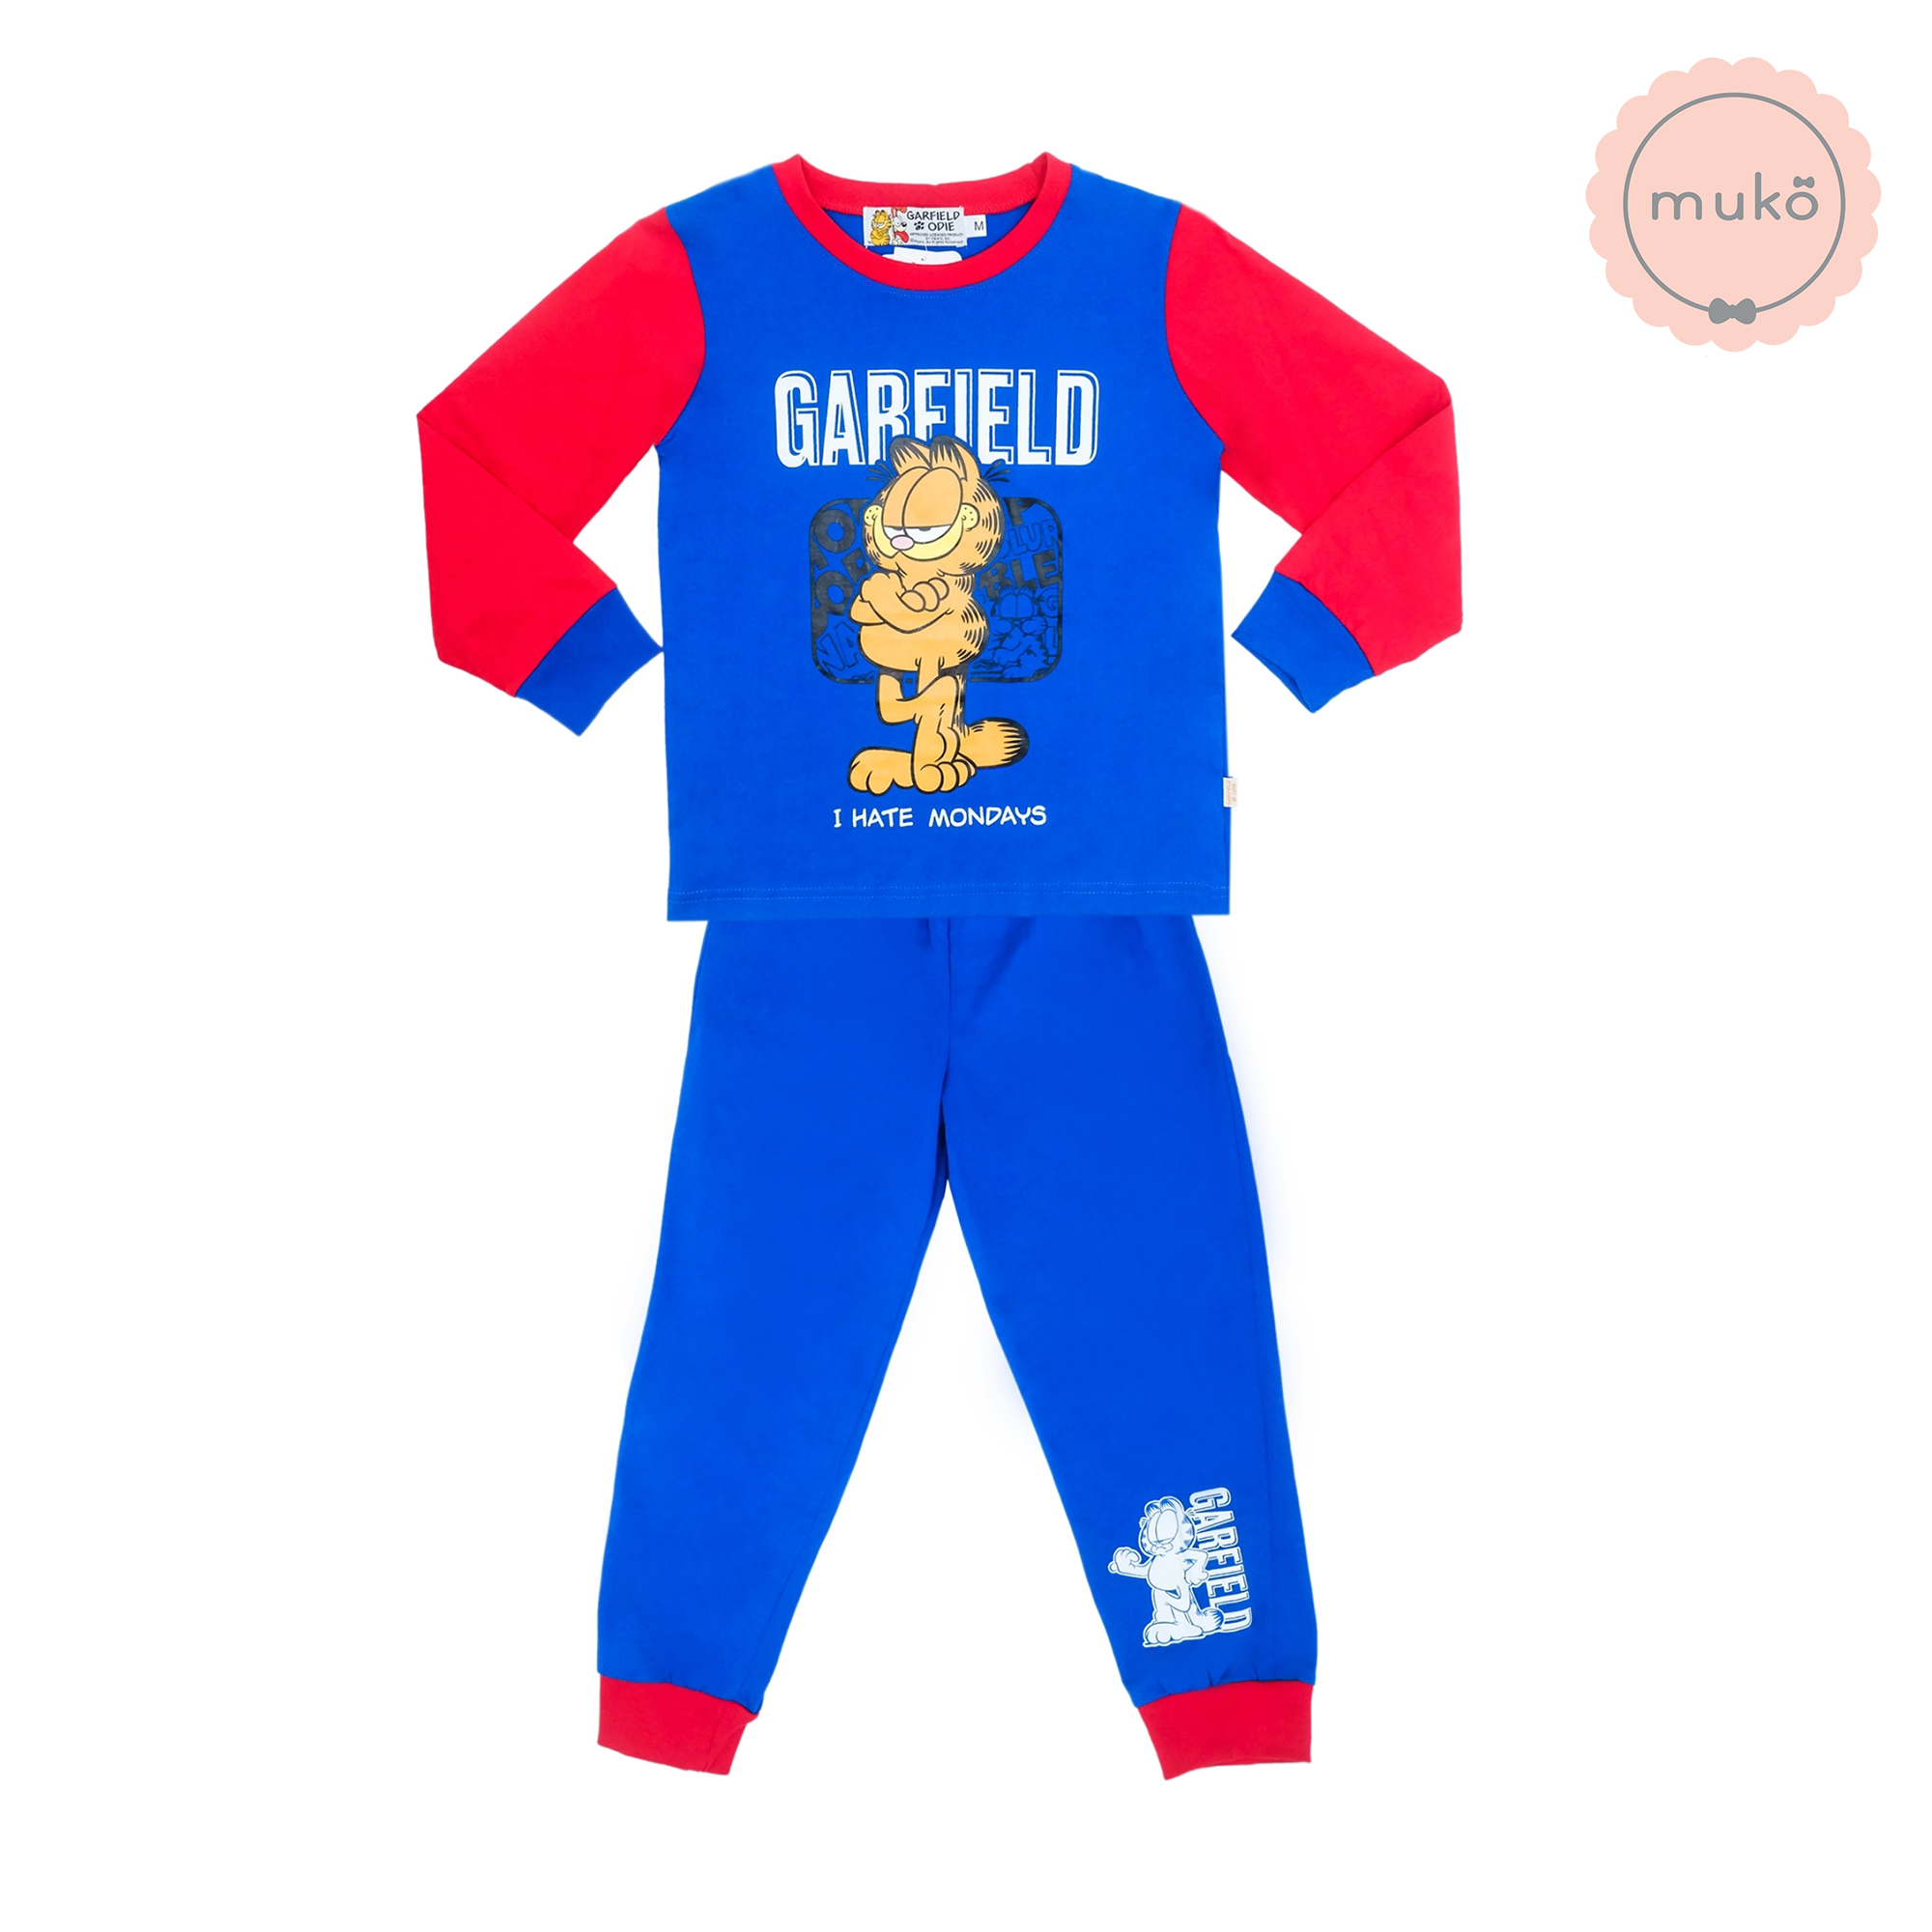 ชุดเด็ก 5-6 ขวบ แขนยาว-ขายาว (Size M) MGF127-103-XL-Midnight Blue M ลาย กาฟิวส์ Garfield